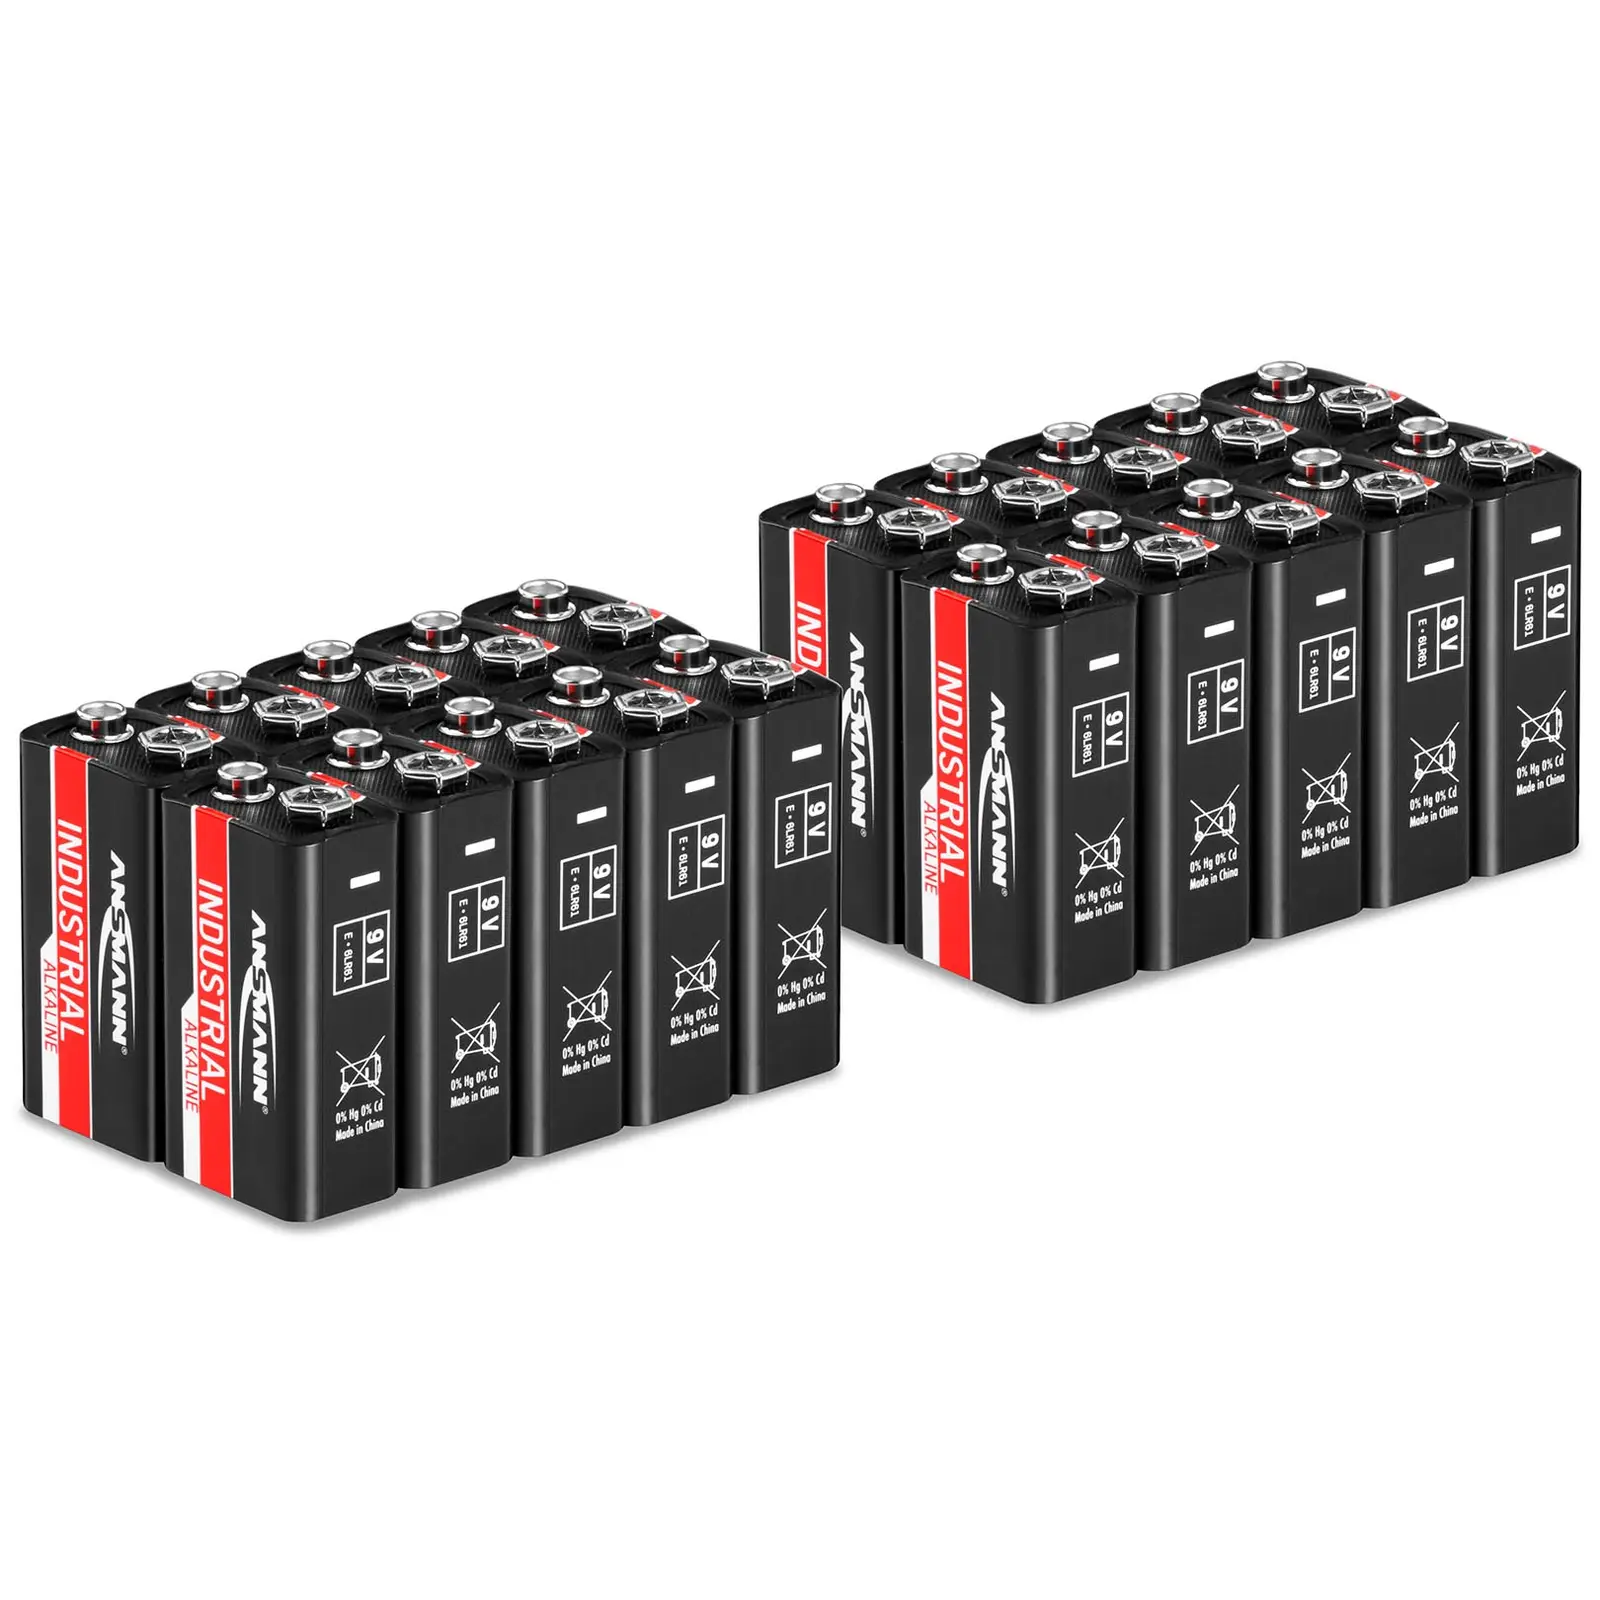 Sparpaket 20 x 6LR61 9 Volt- Ansmann INDUSTRIAL Alkaliska Batterier